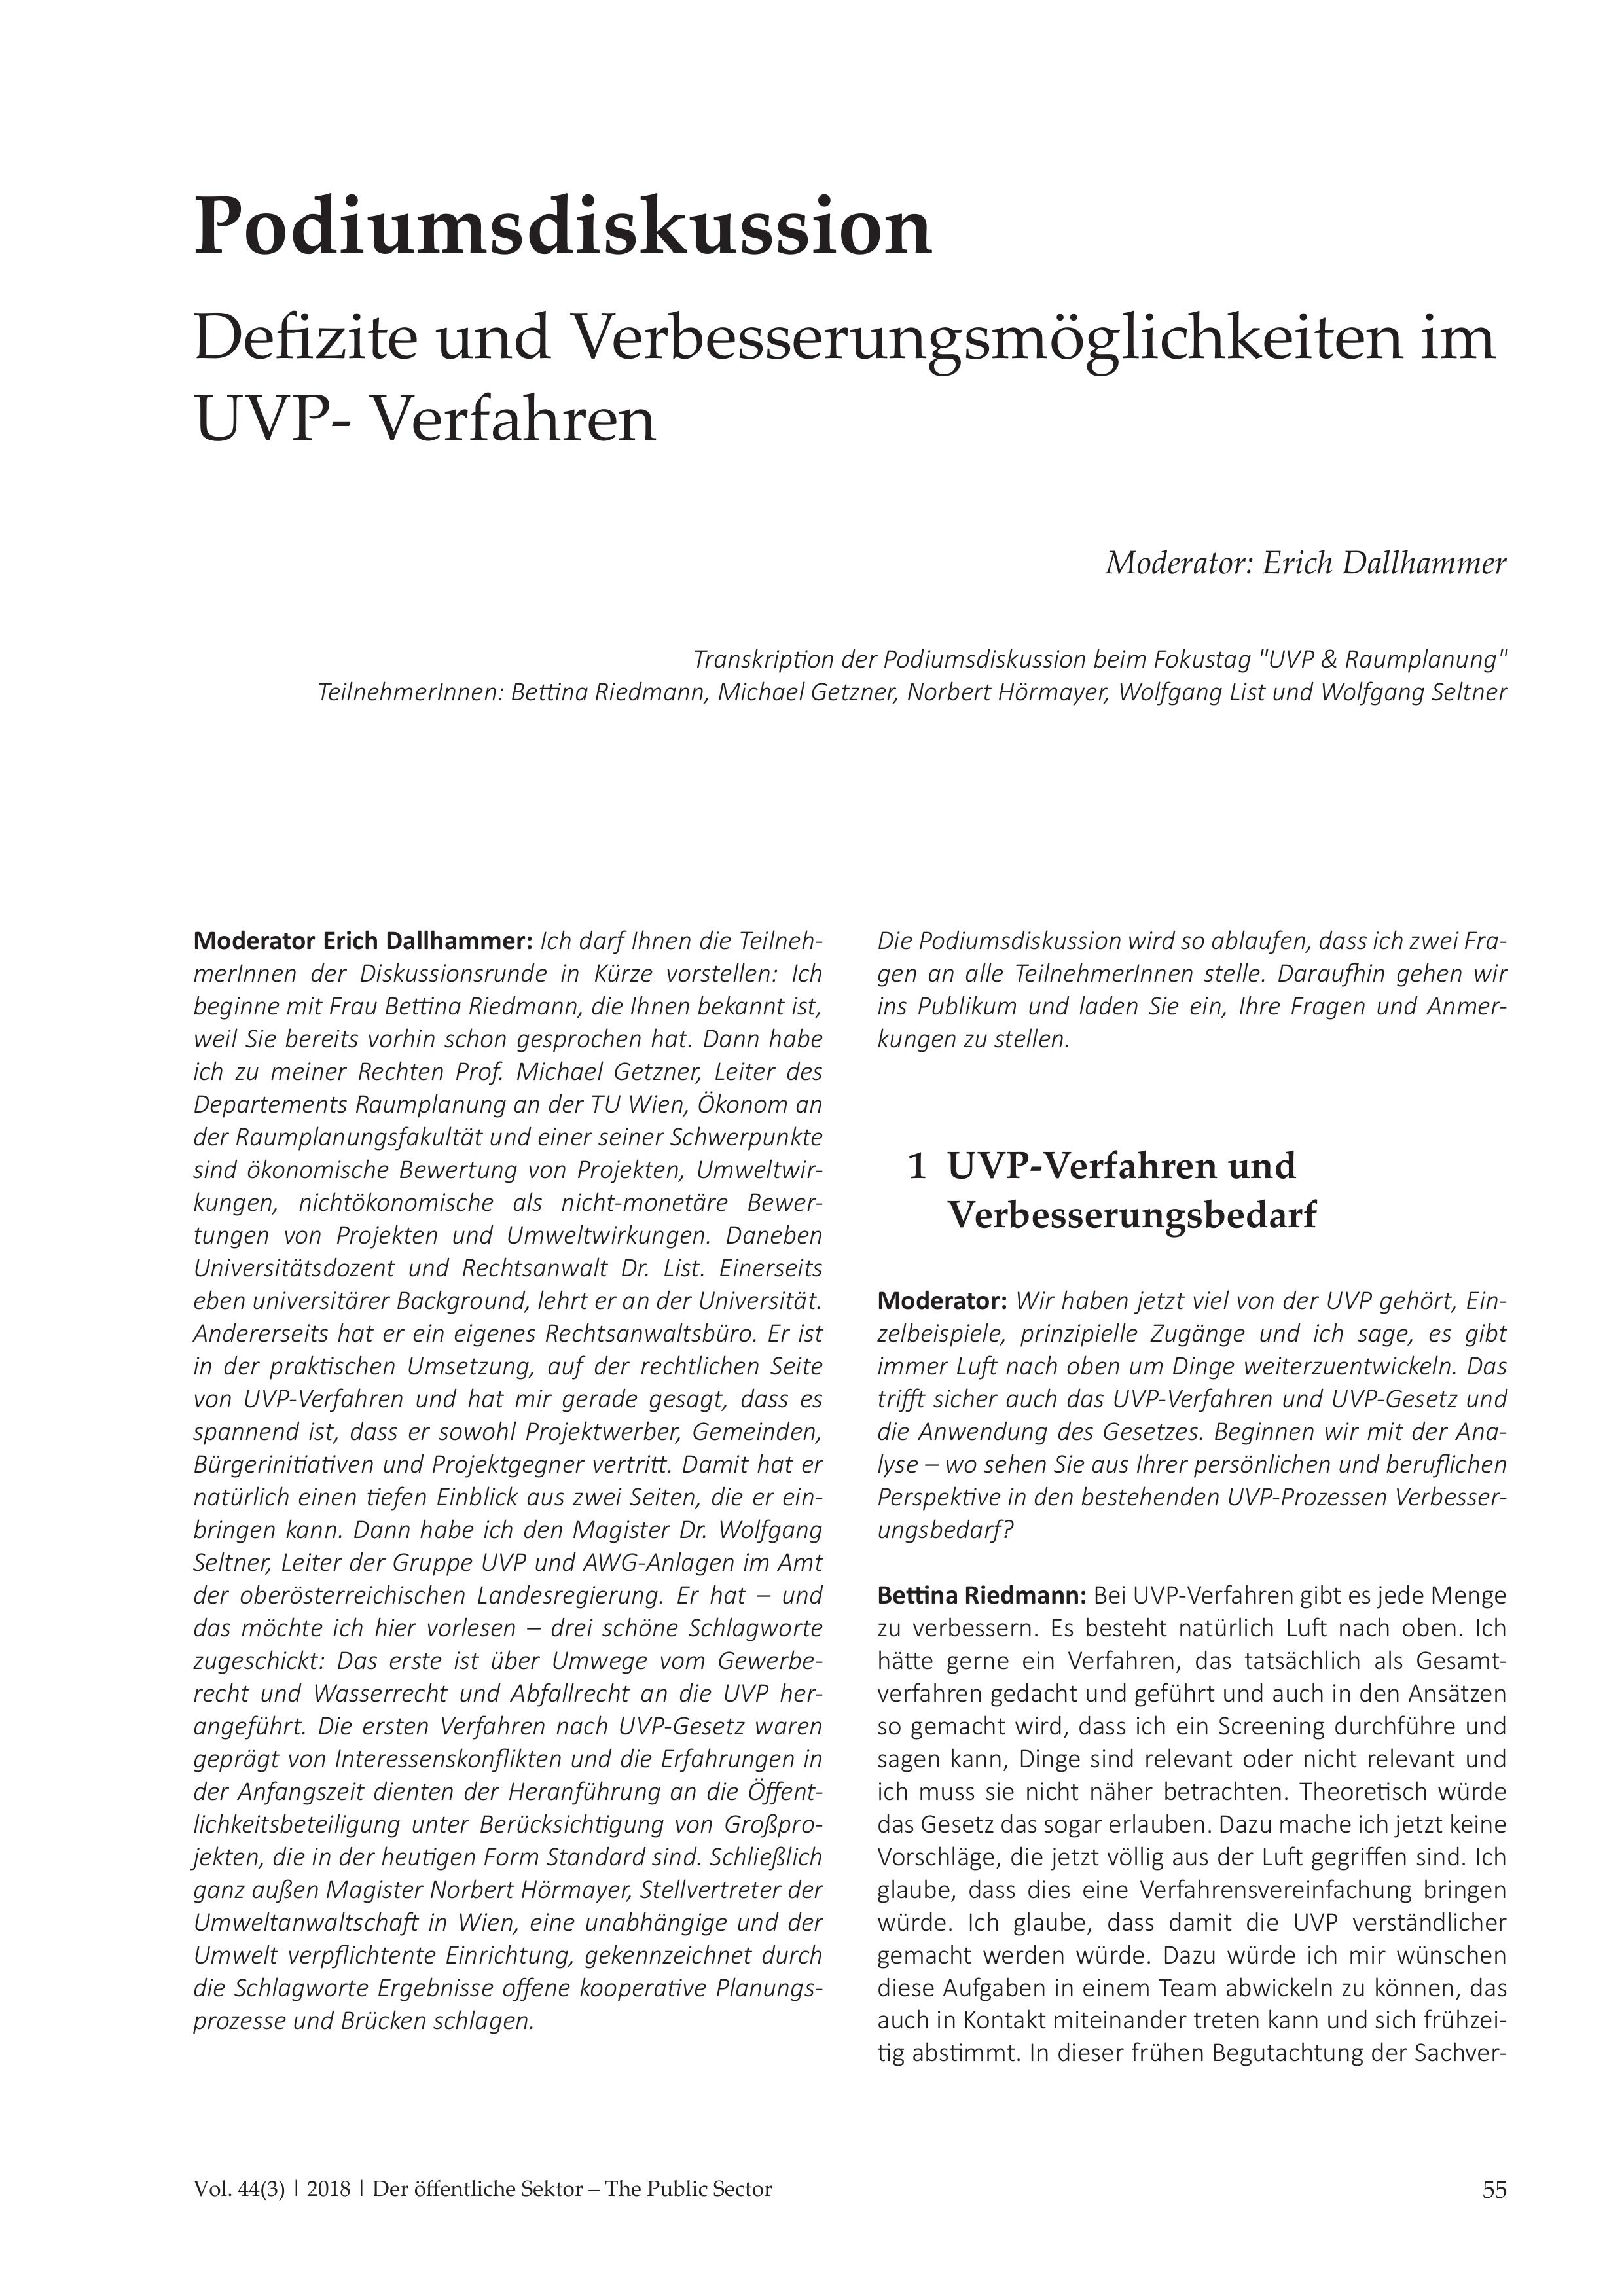 Podiumsdiskussion Defizite und Verbesserungsmöglichkeiten im UVP-Verfahren